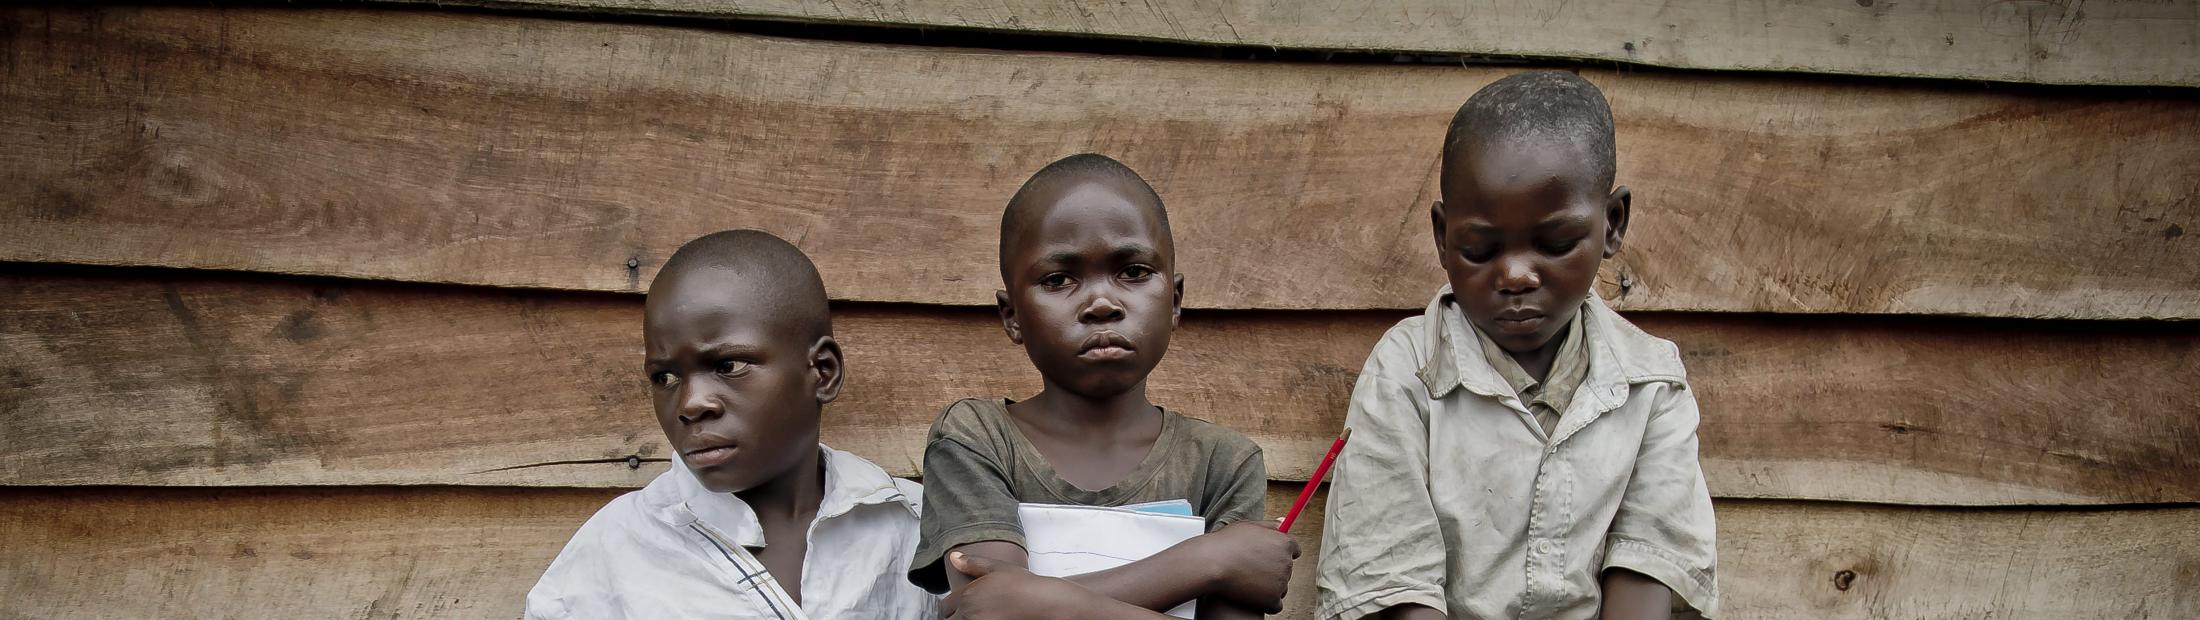 Reencuentro de un niño de 10 años y su familia en Congo